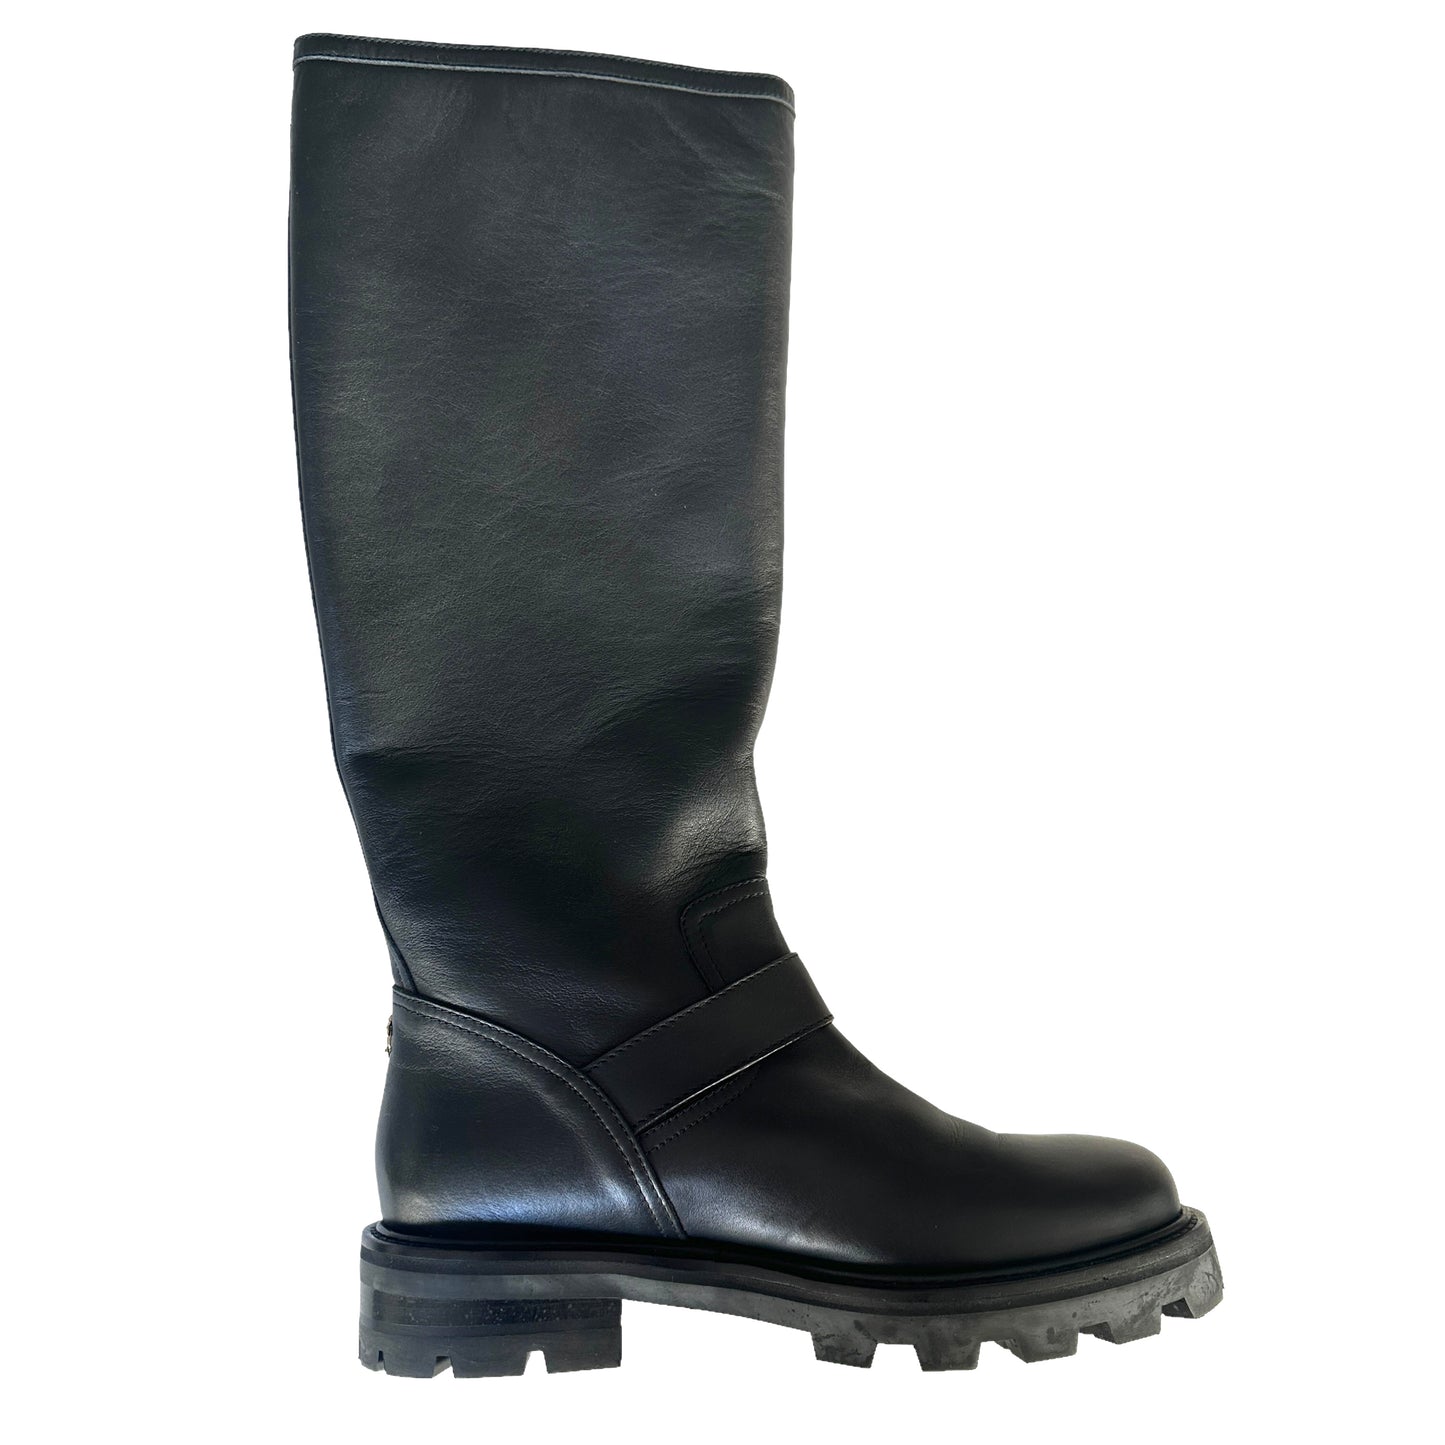 Tall Black Boots - 8.5